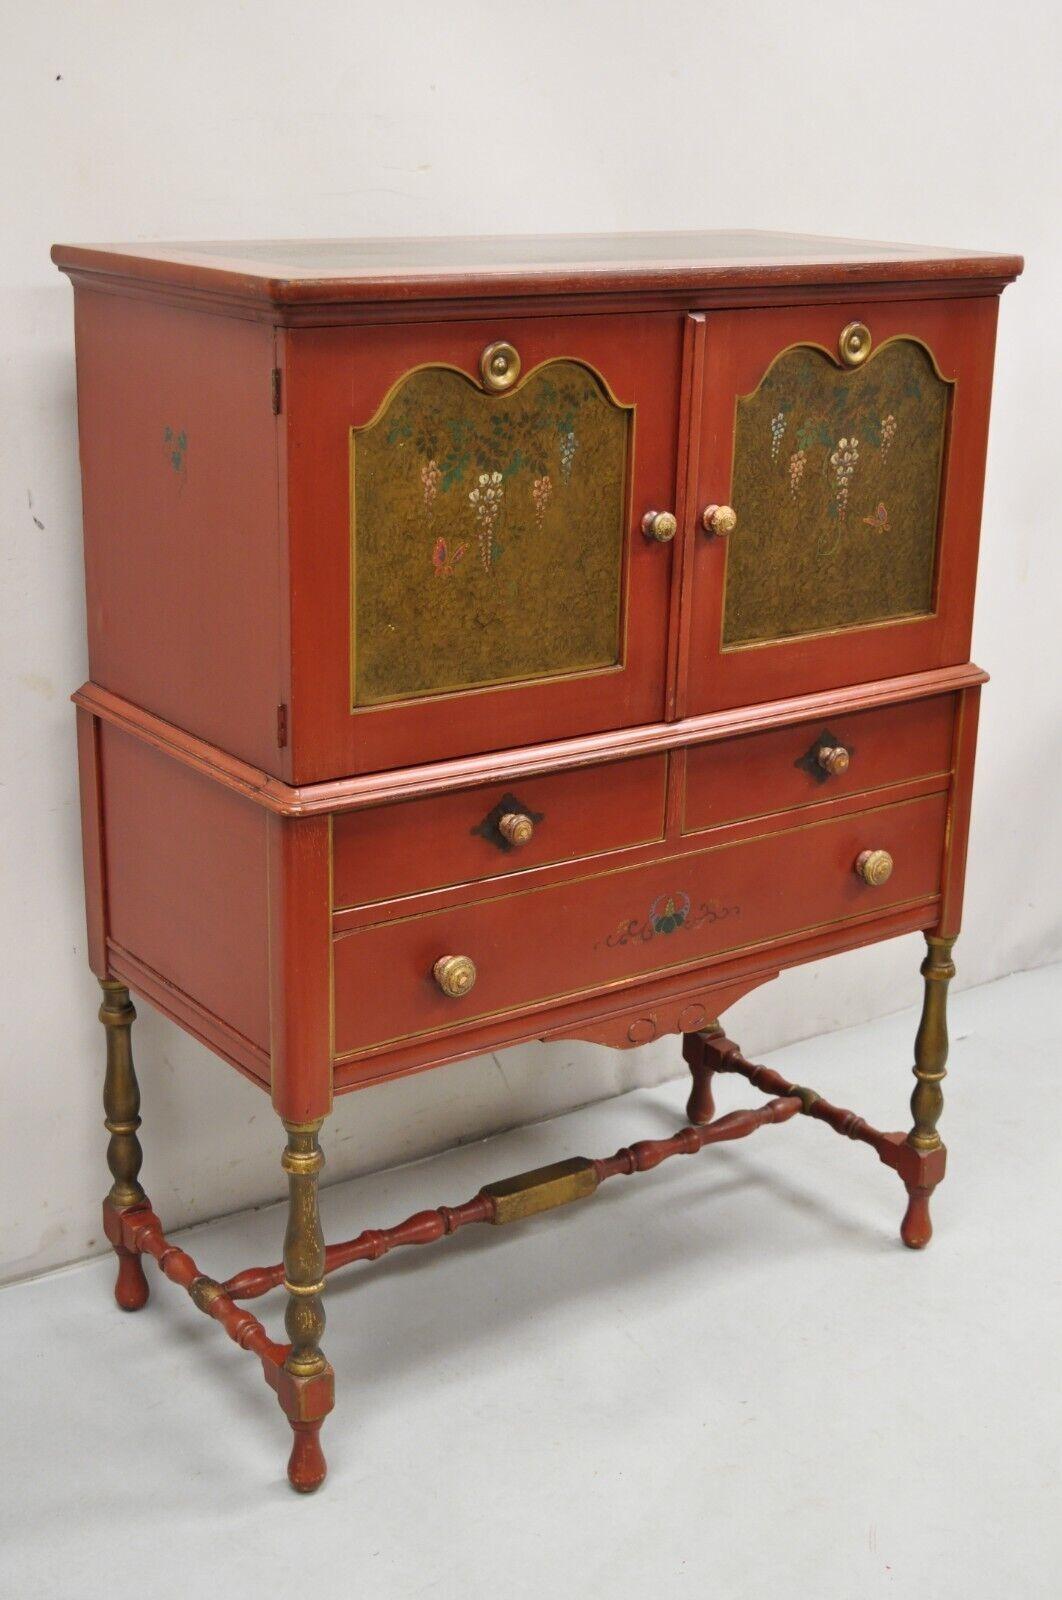 Quaint Furniture Stickley Bros Small Red Painted Colonial Style Cupboard Cabinet.  Es handelt sich um ein schönes, kleineres Exemplar, mit originalen Farbdetails, 3 Schubladen mit Schwalbenschwänzen, originalem Label, sehr 